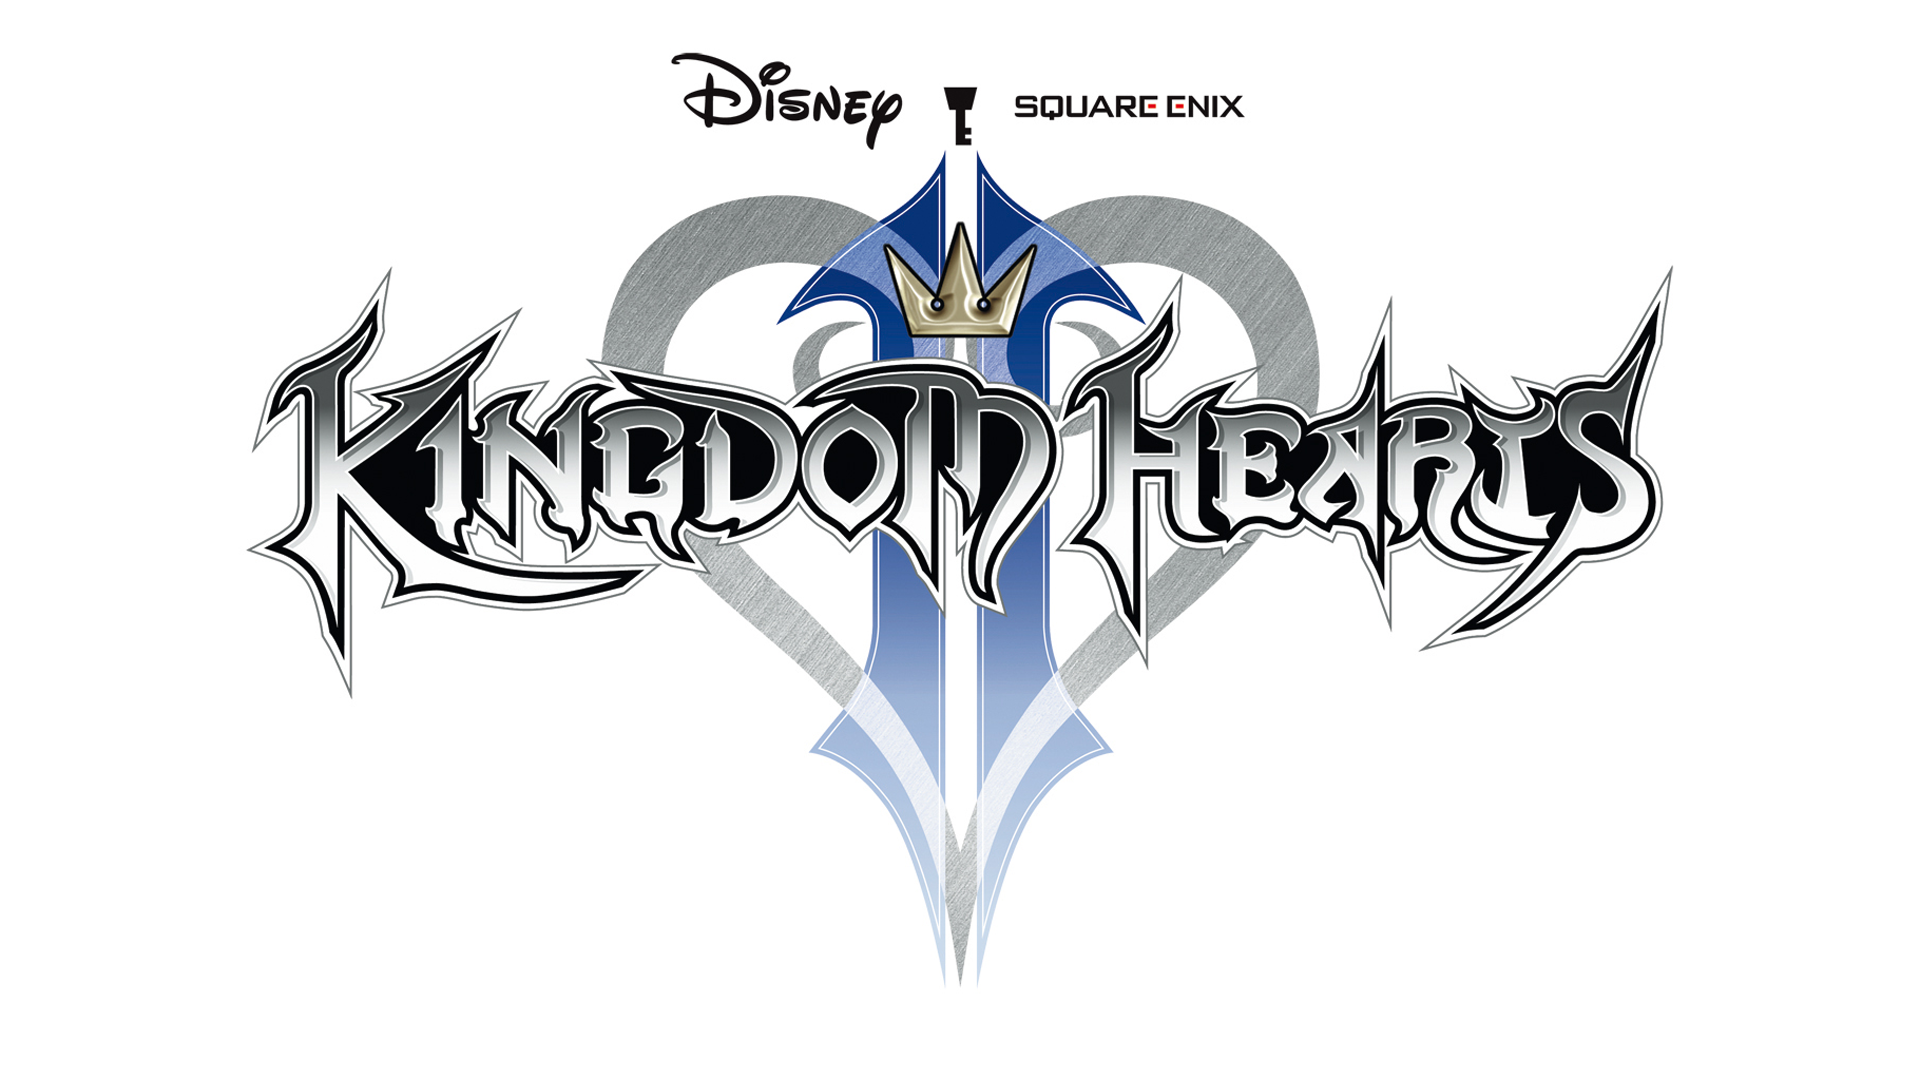 Kingdom Hearts II Logo